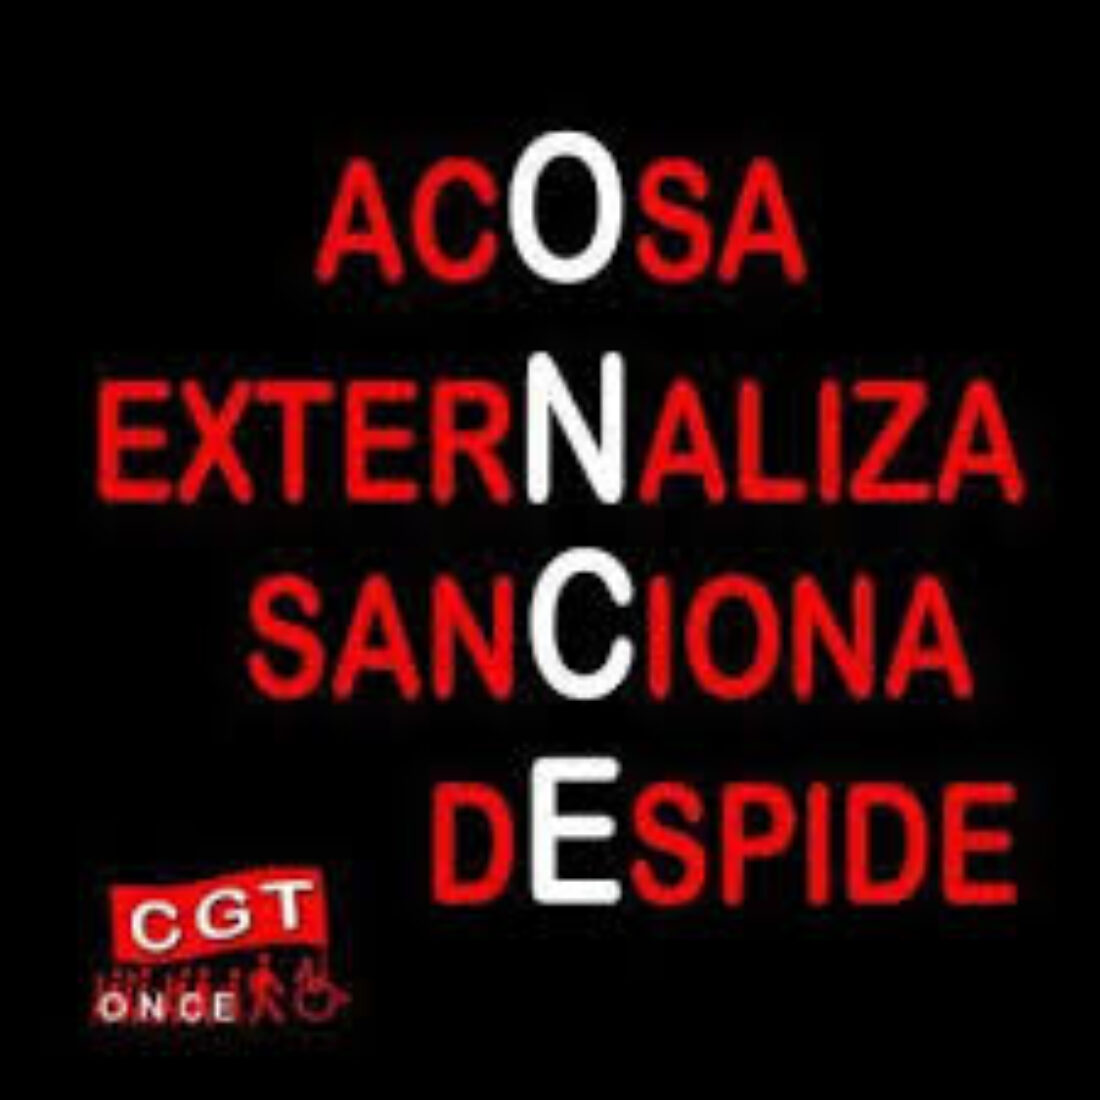 13 y 14-s Valencia: Concentración en protesta por la sanción de la dirección de la ONCE a un afiliado de la CGT